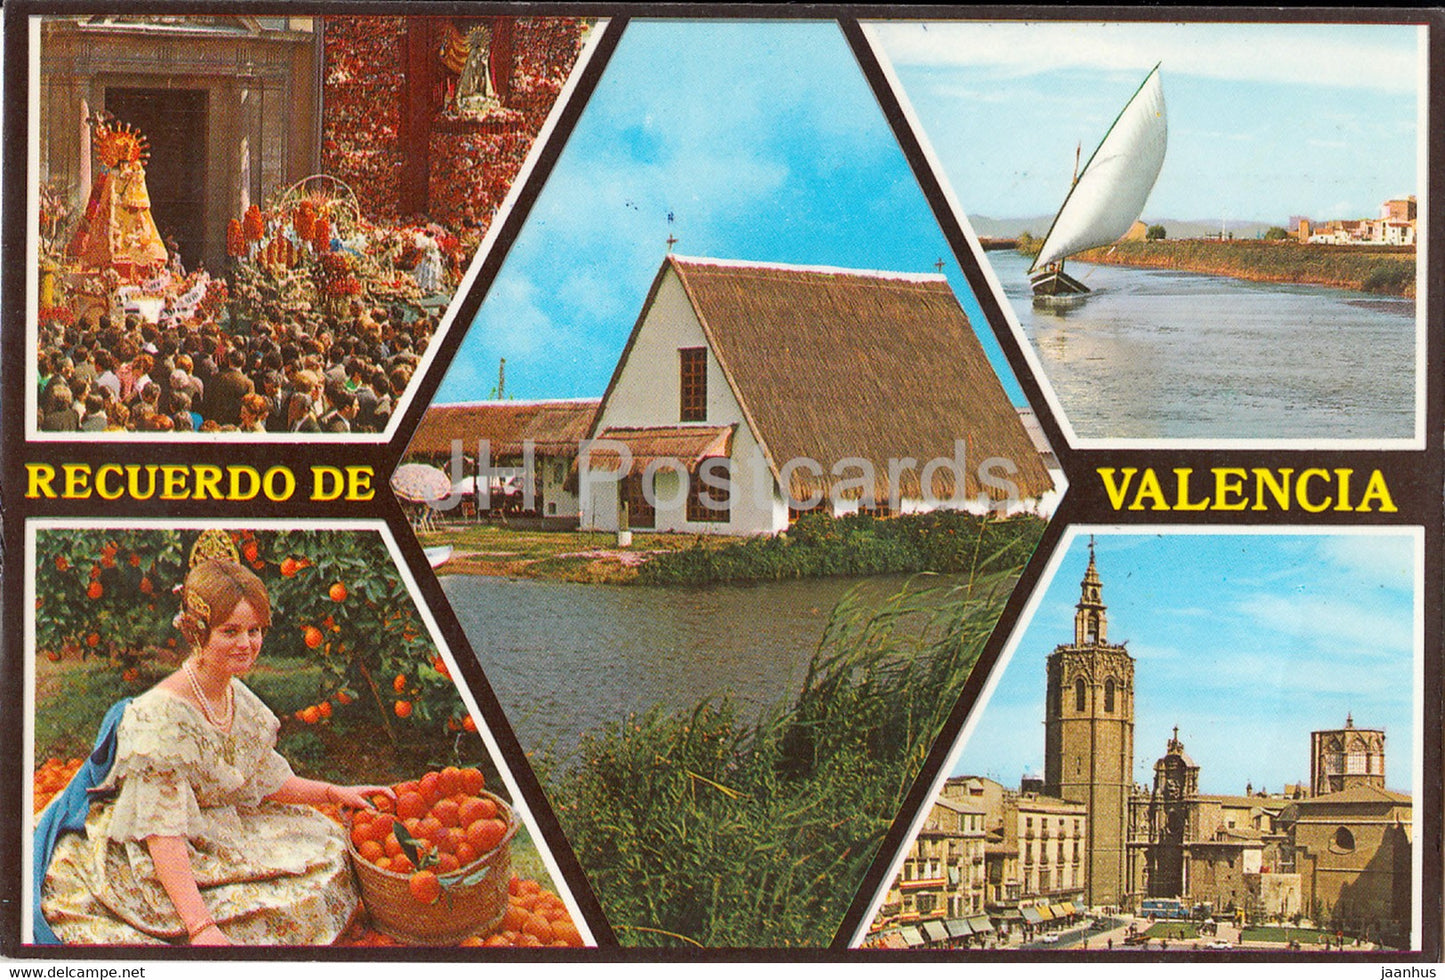 Recuerdo de Valencia - Bellezas de la Ciudad - Beauties of the City - multiview - 188 - 1981 - Spain - used - JH Postcards